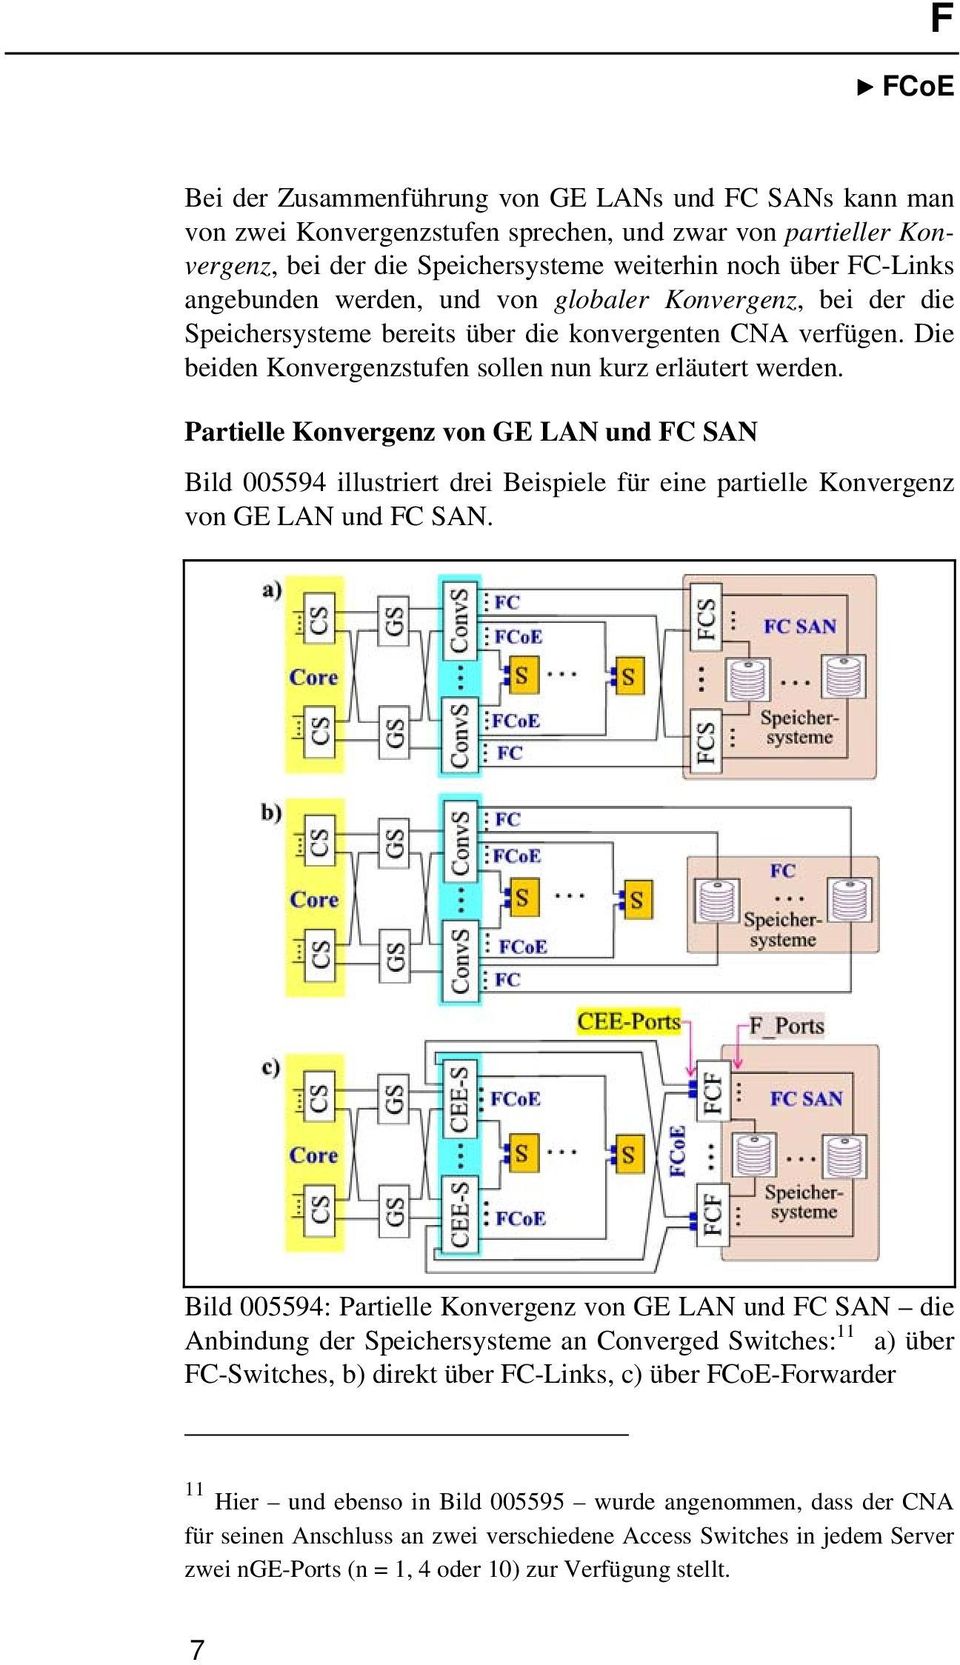 Partielle Konvergenz von GE LAN und FC SAN Bild 005594 illustriert drei Beispiele für eine partielle Konvergenz von GE LAN und FC SAN.